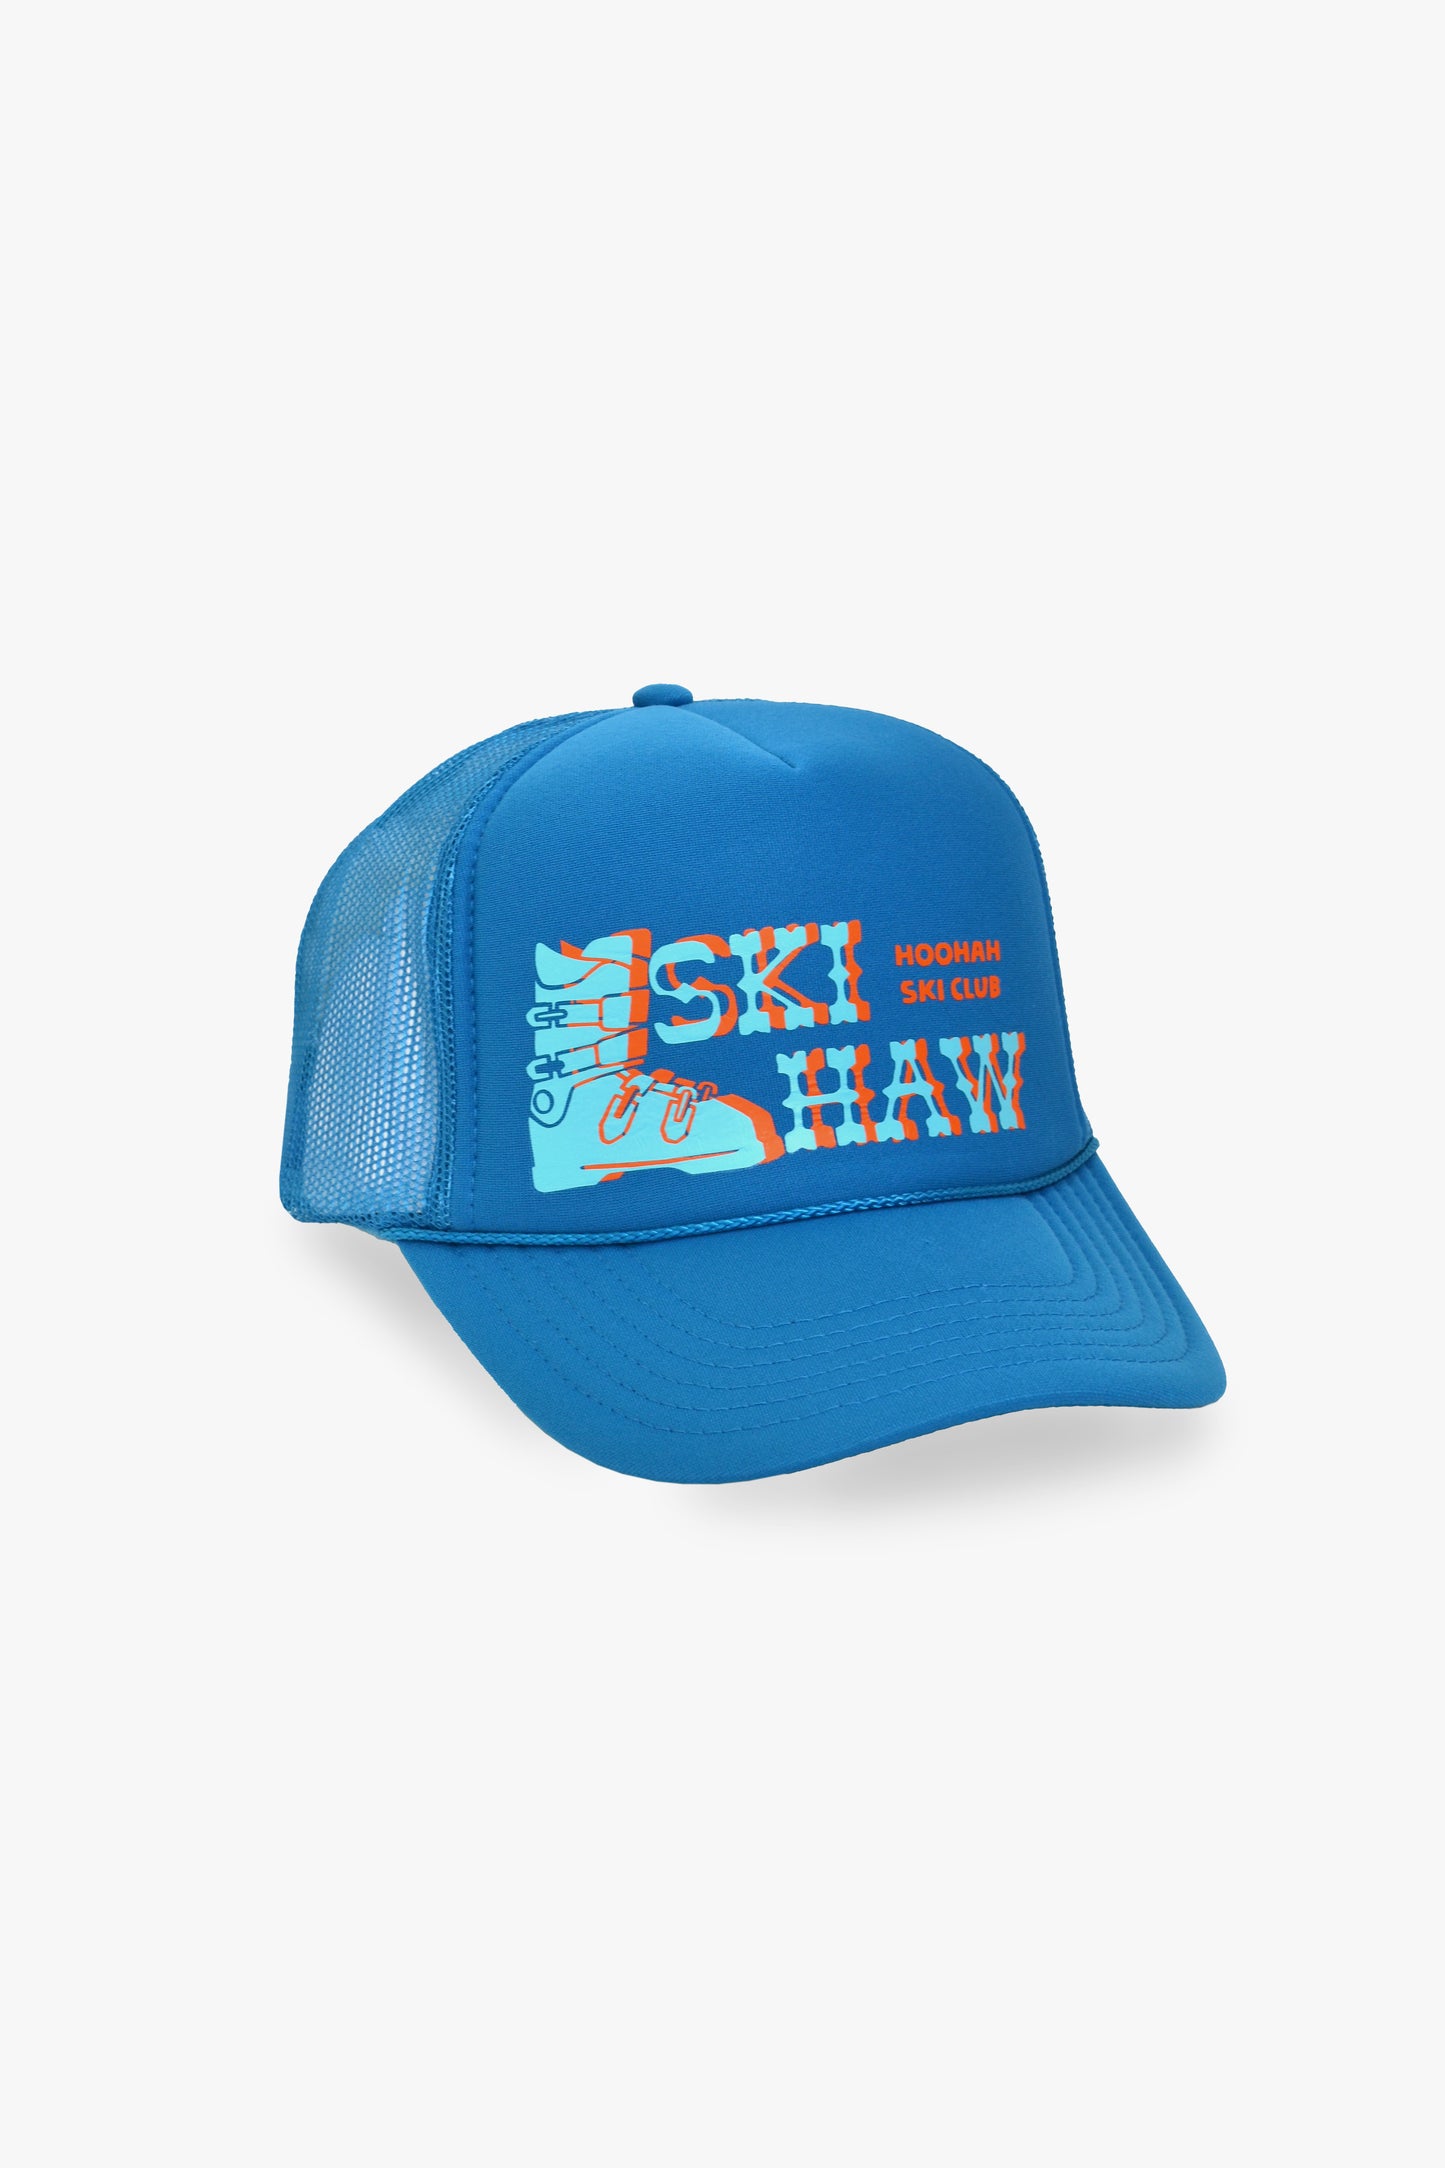 Ski-Haw Trucker Hat